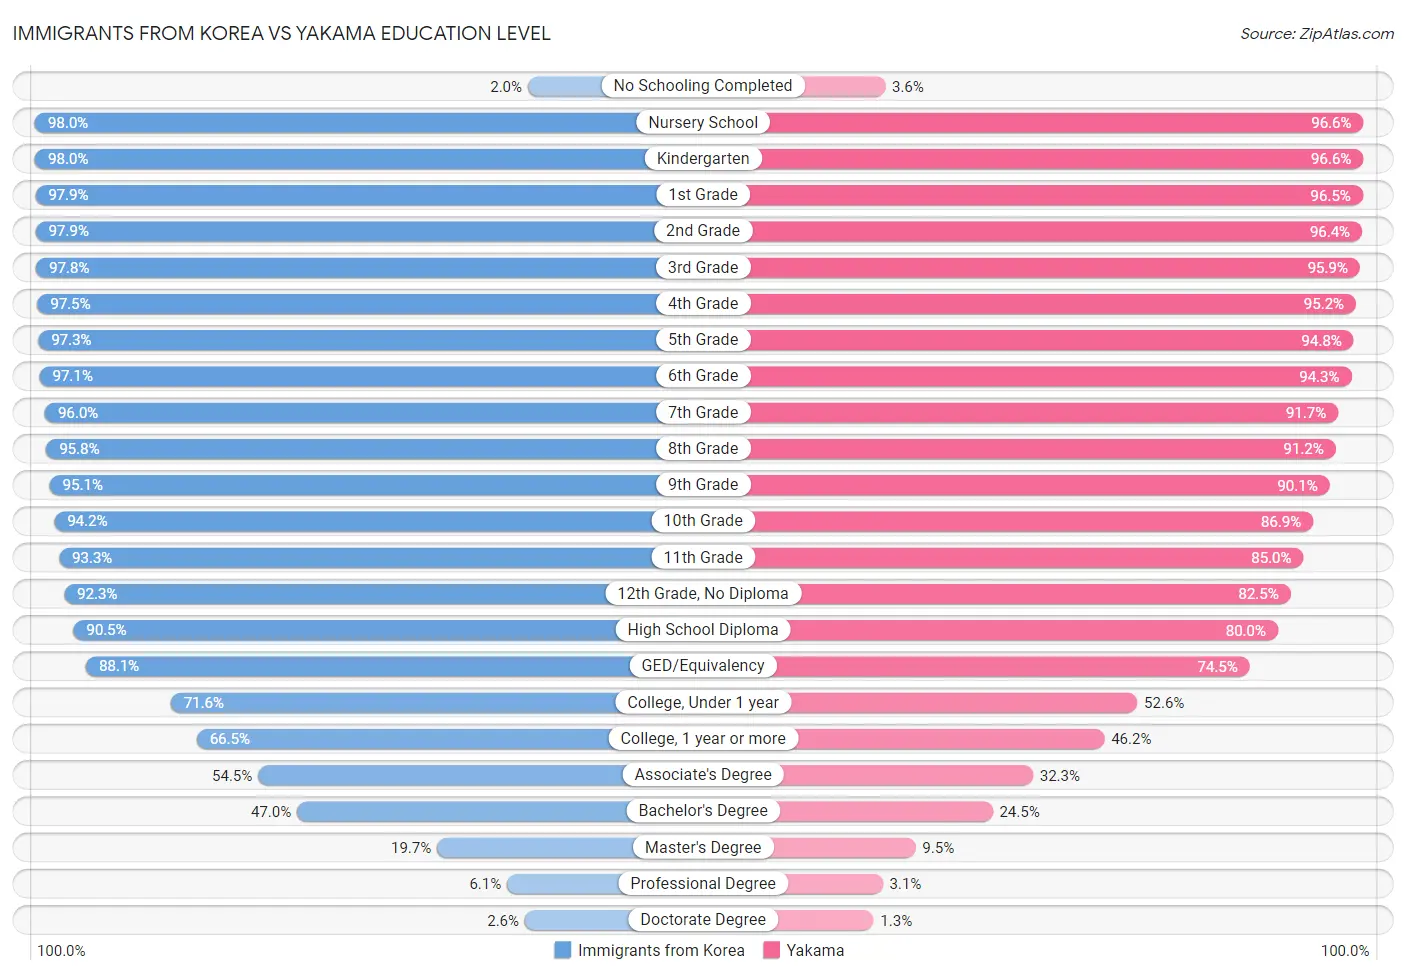 Immigrants from Korea vs Yakama Education Level